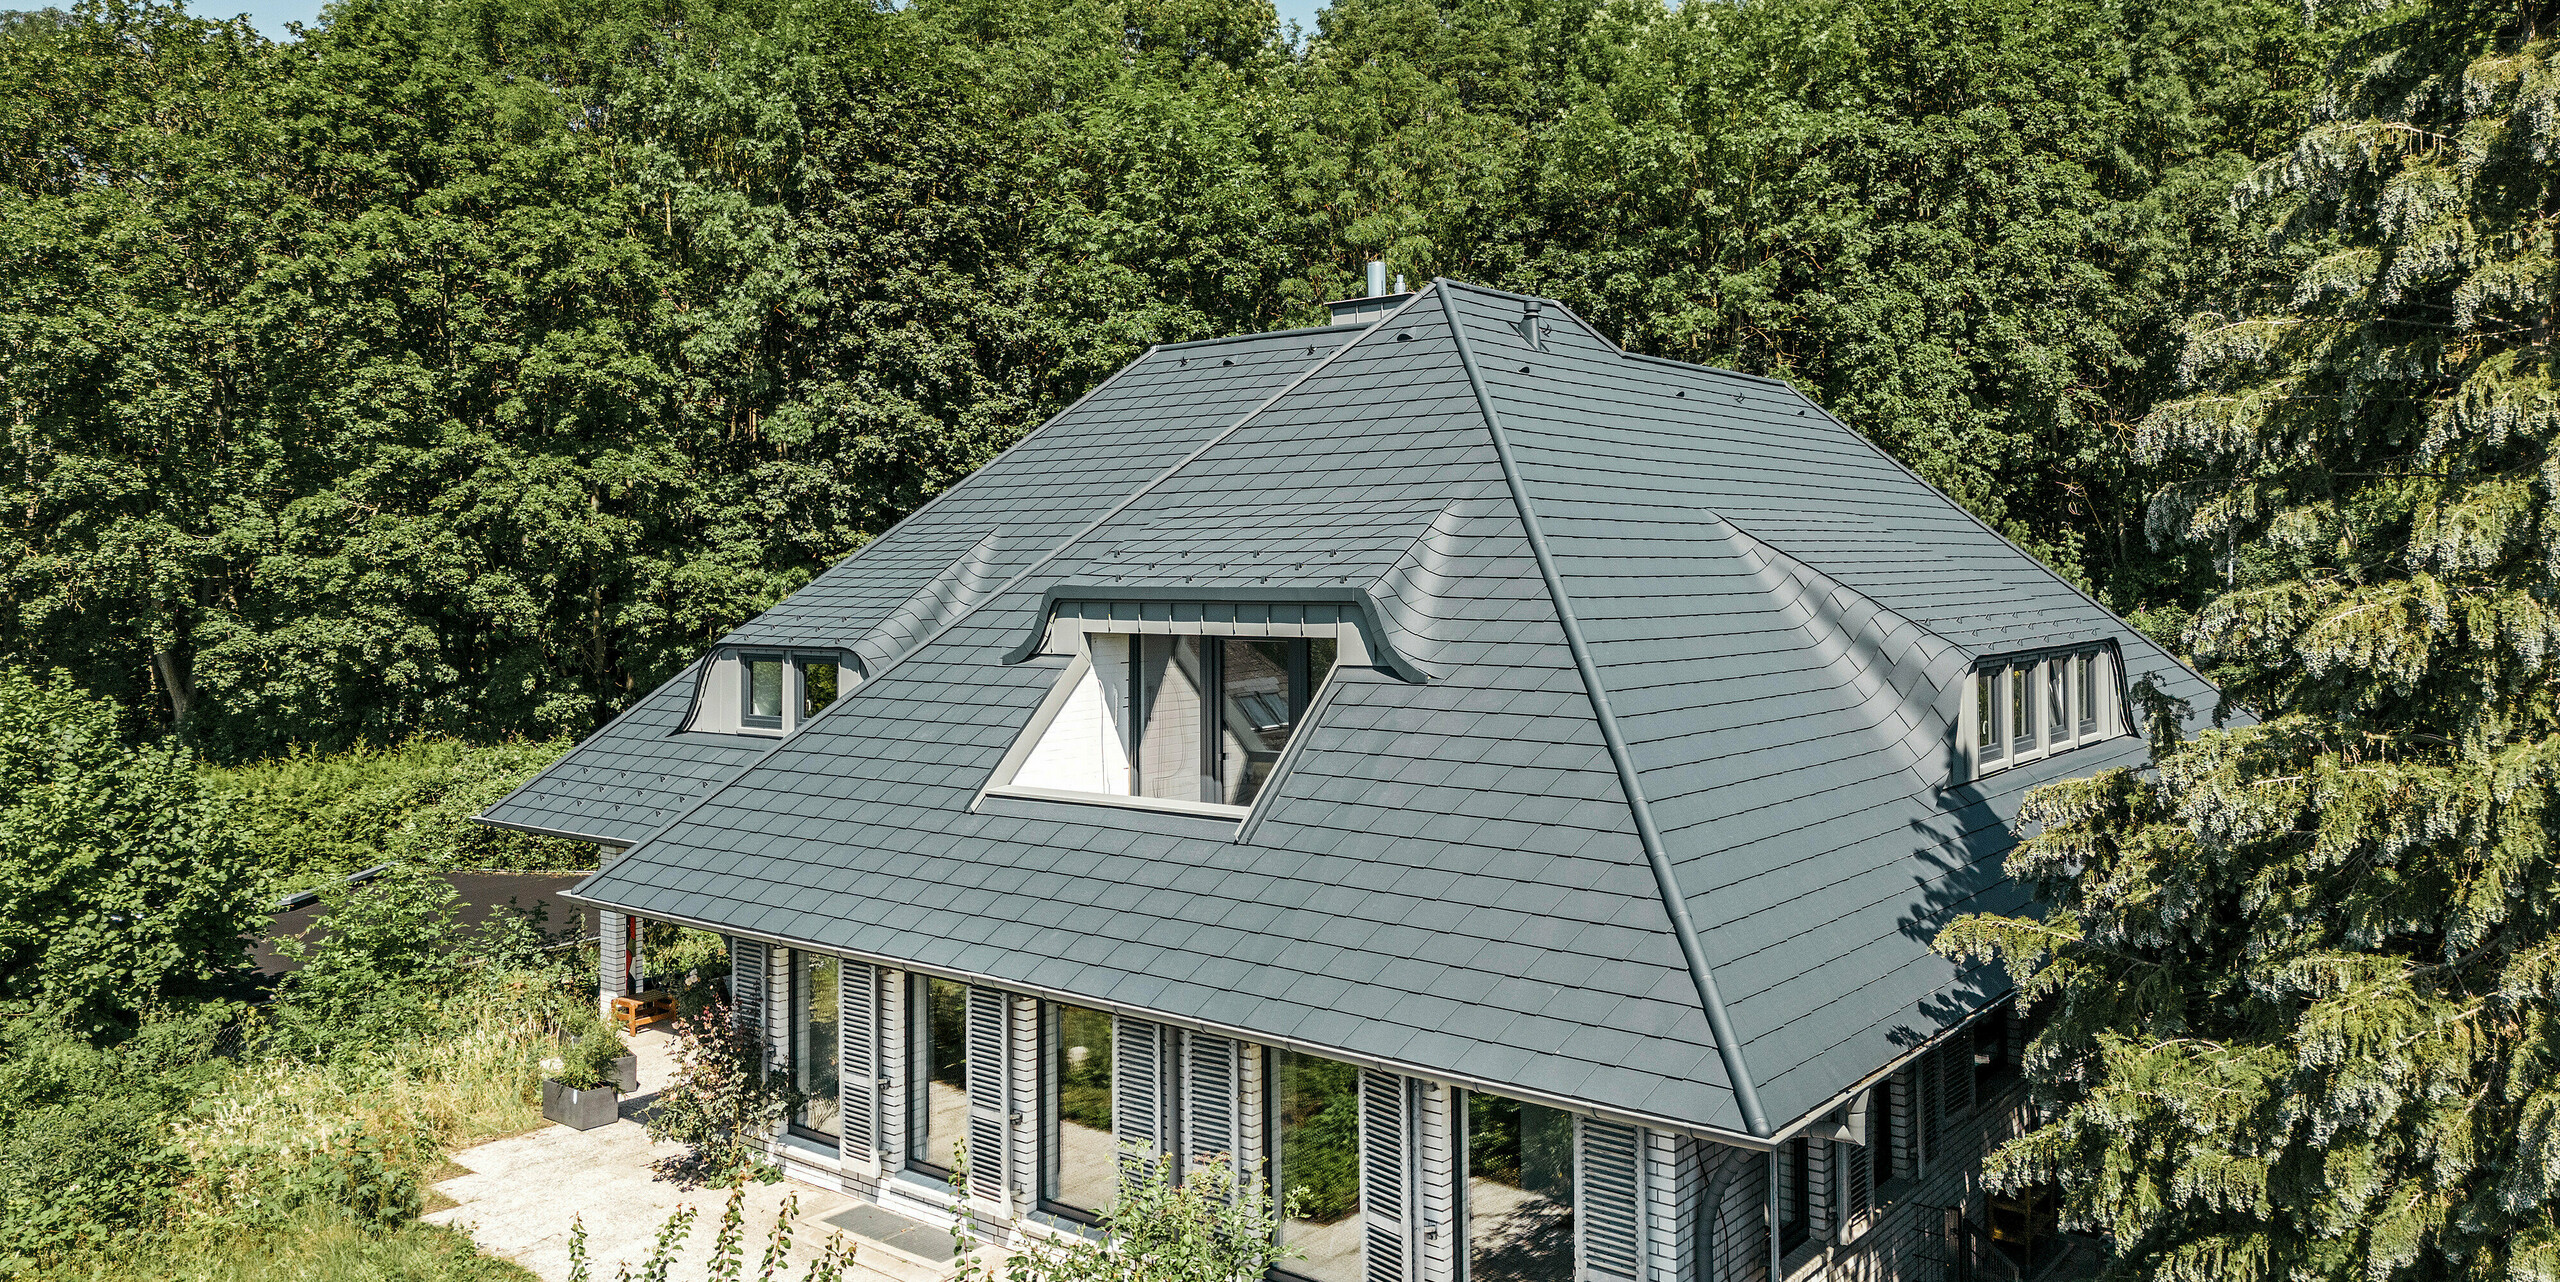 Einfamilienhaus mit spektakulärer Dachlandschaft eingedeckt mit PREFA Dachschindeln in P.10 Anthrazit